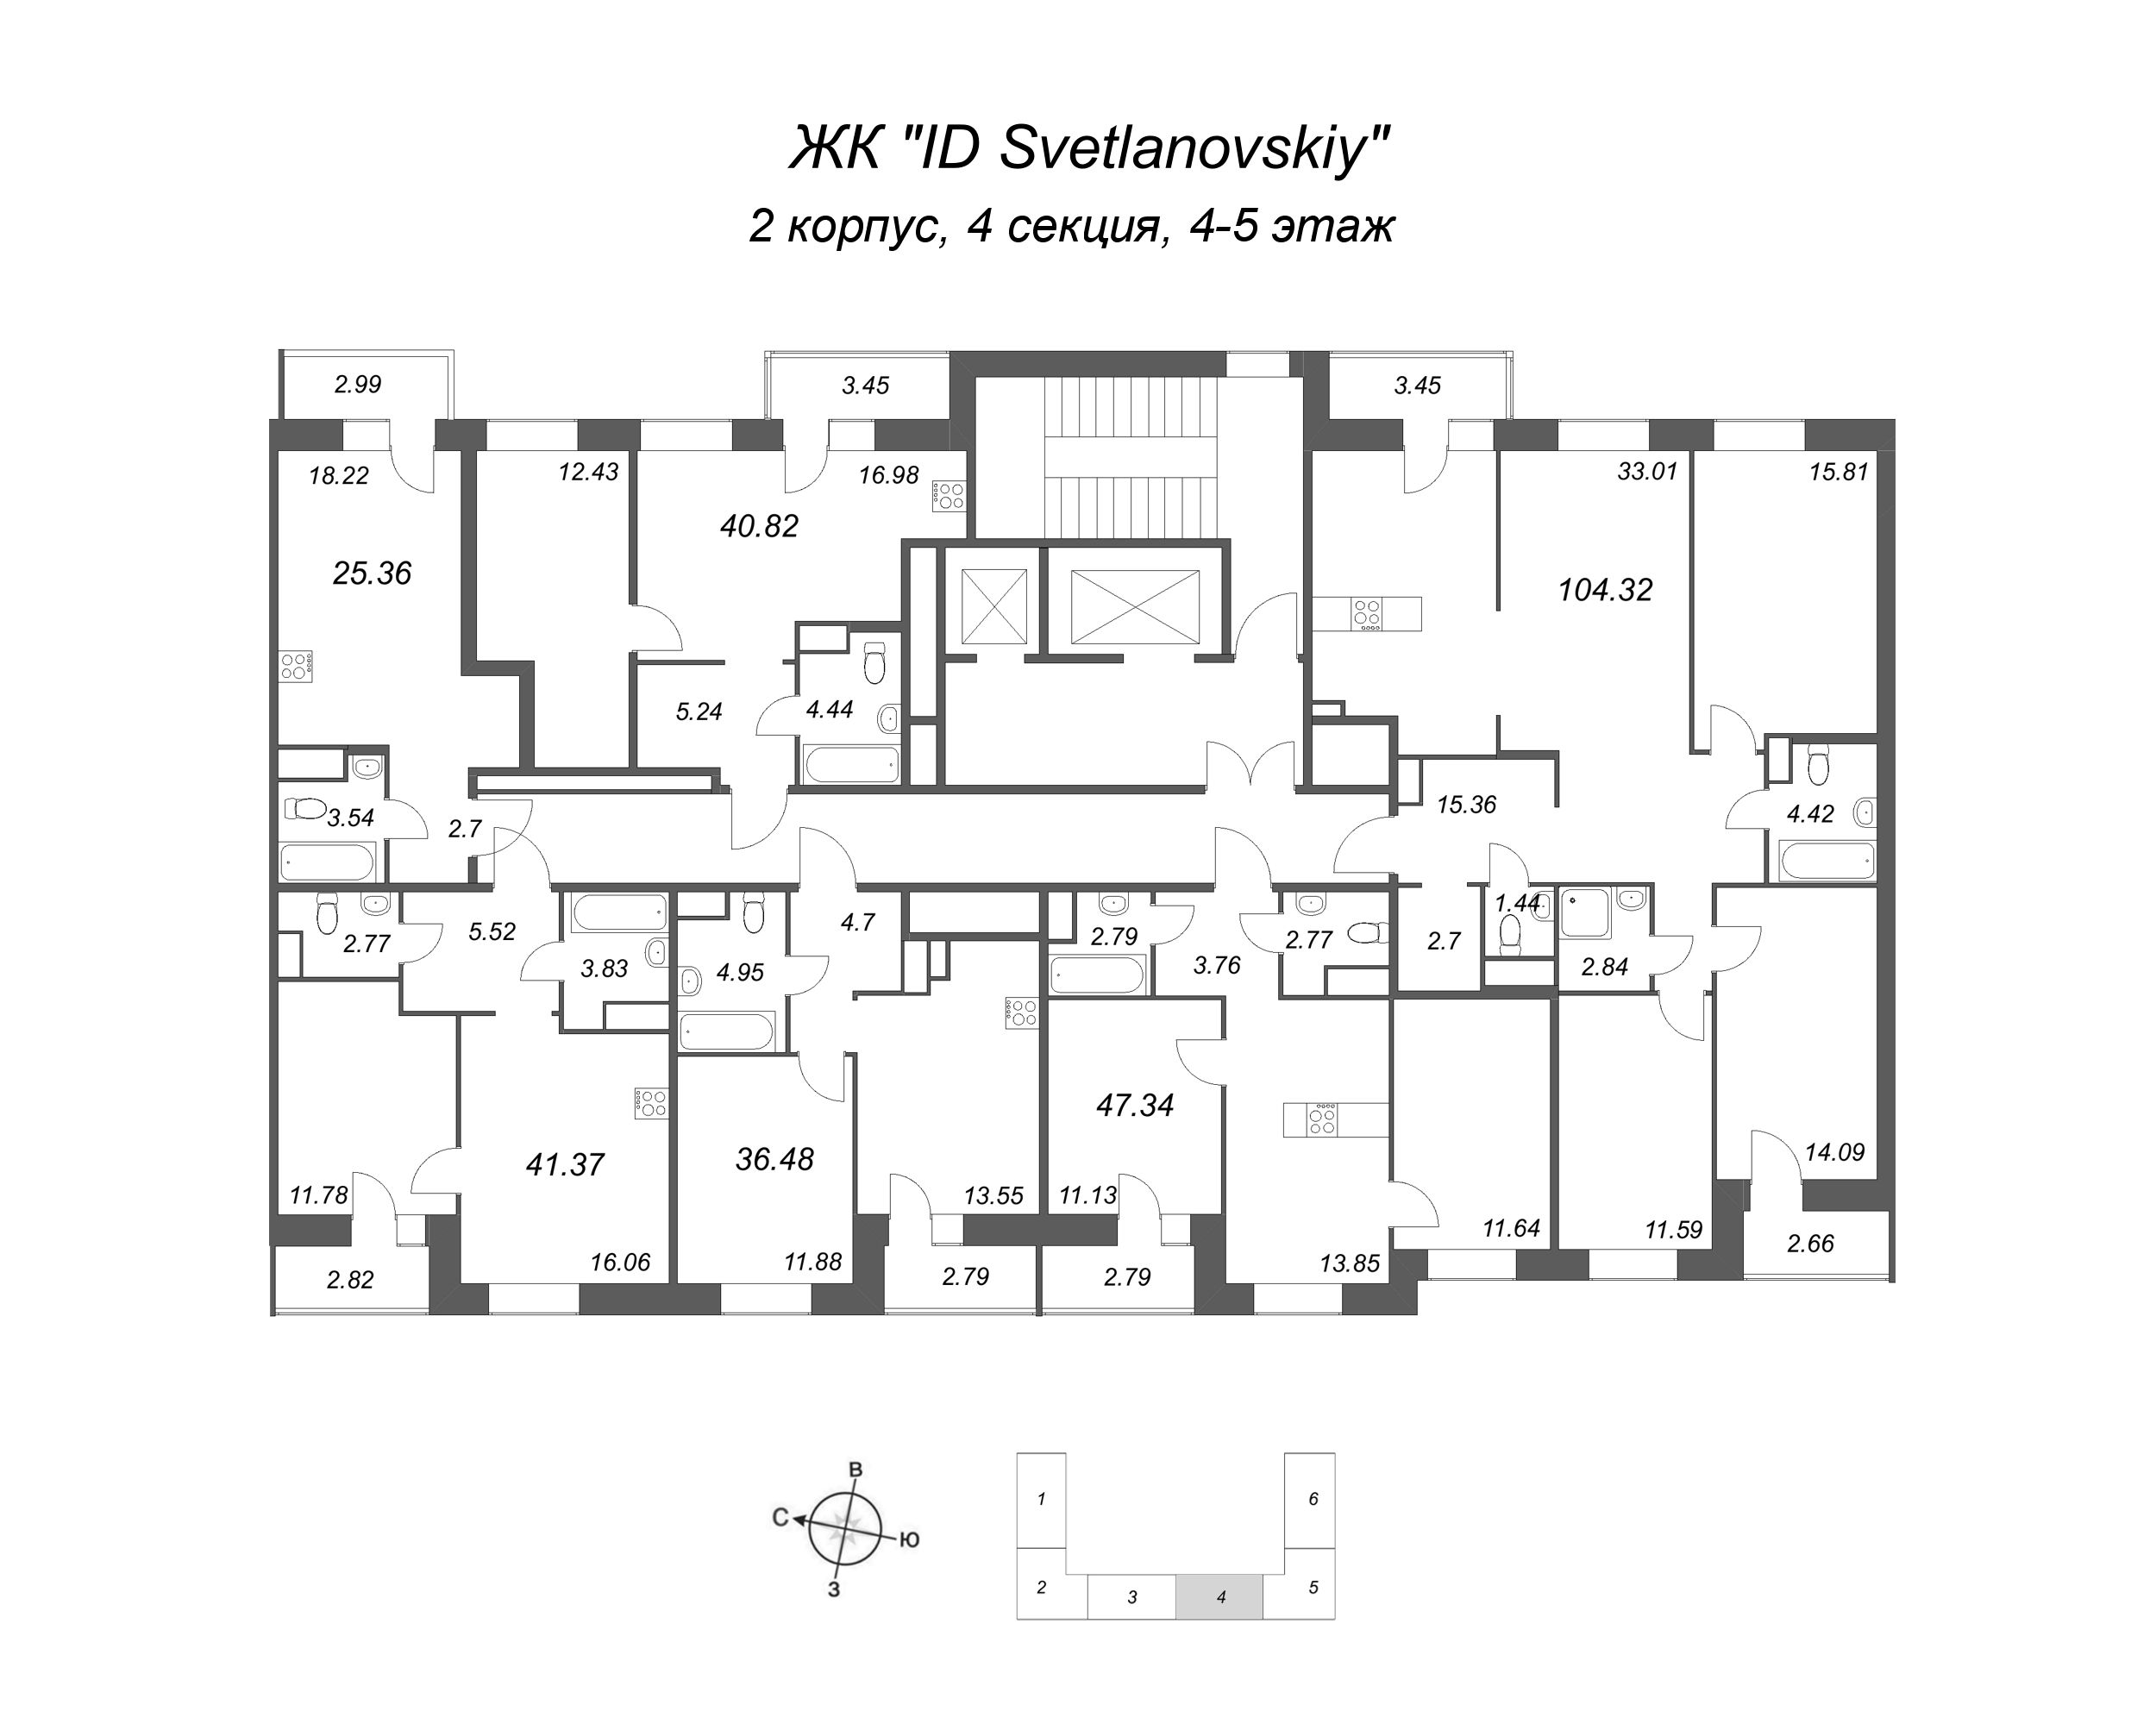 4-комнатная (Евро) квартира, 104.32 м² в ЖК "ID Svetlanovskiy" - планировка этажа